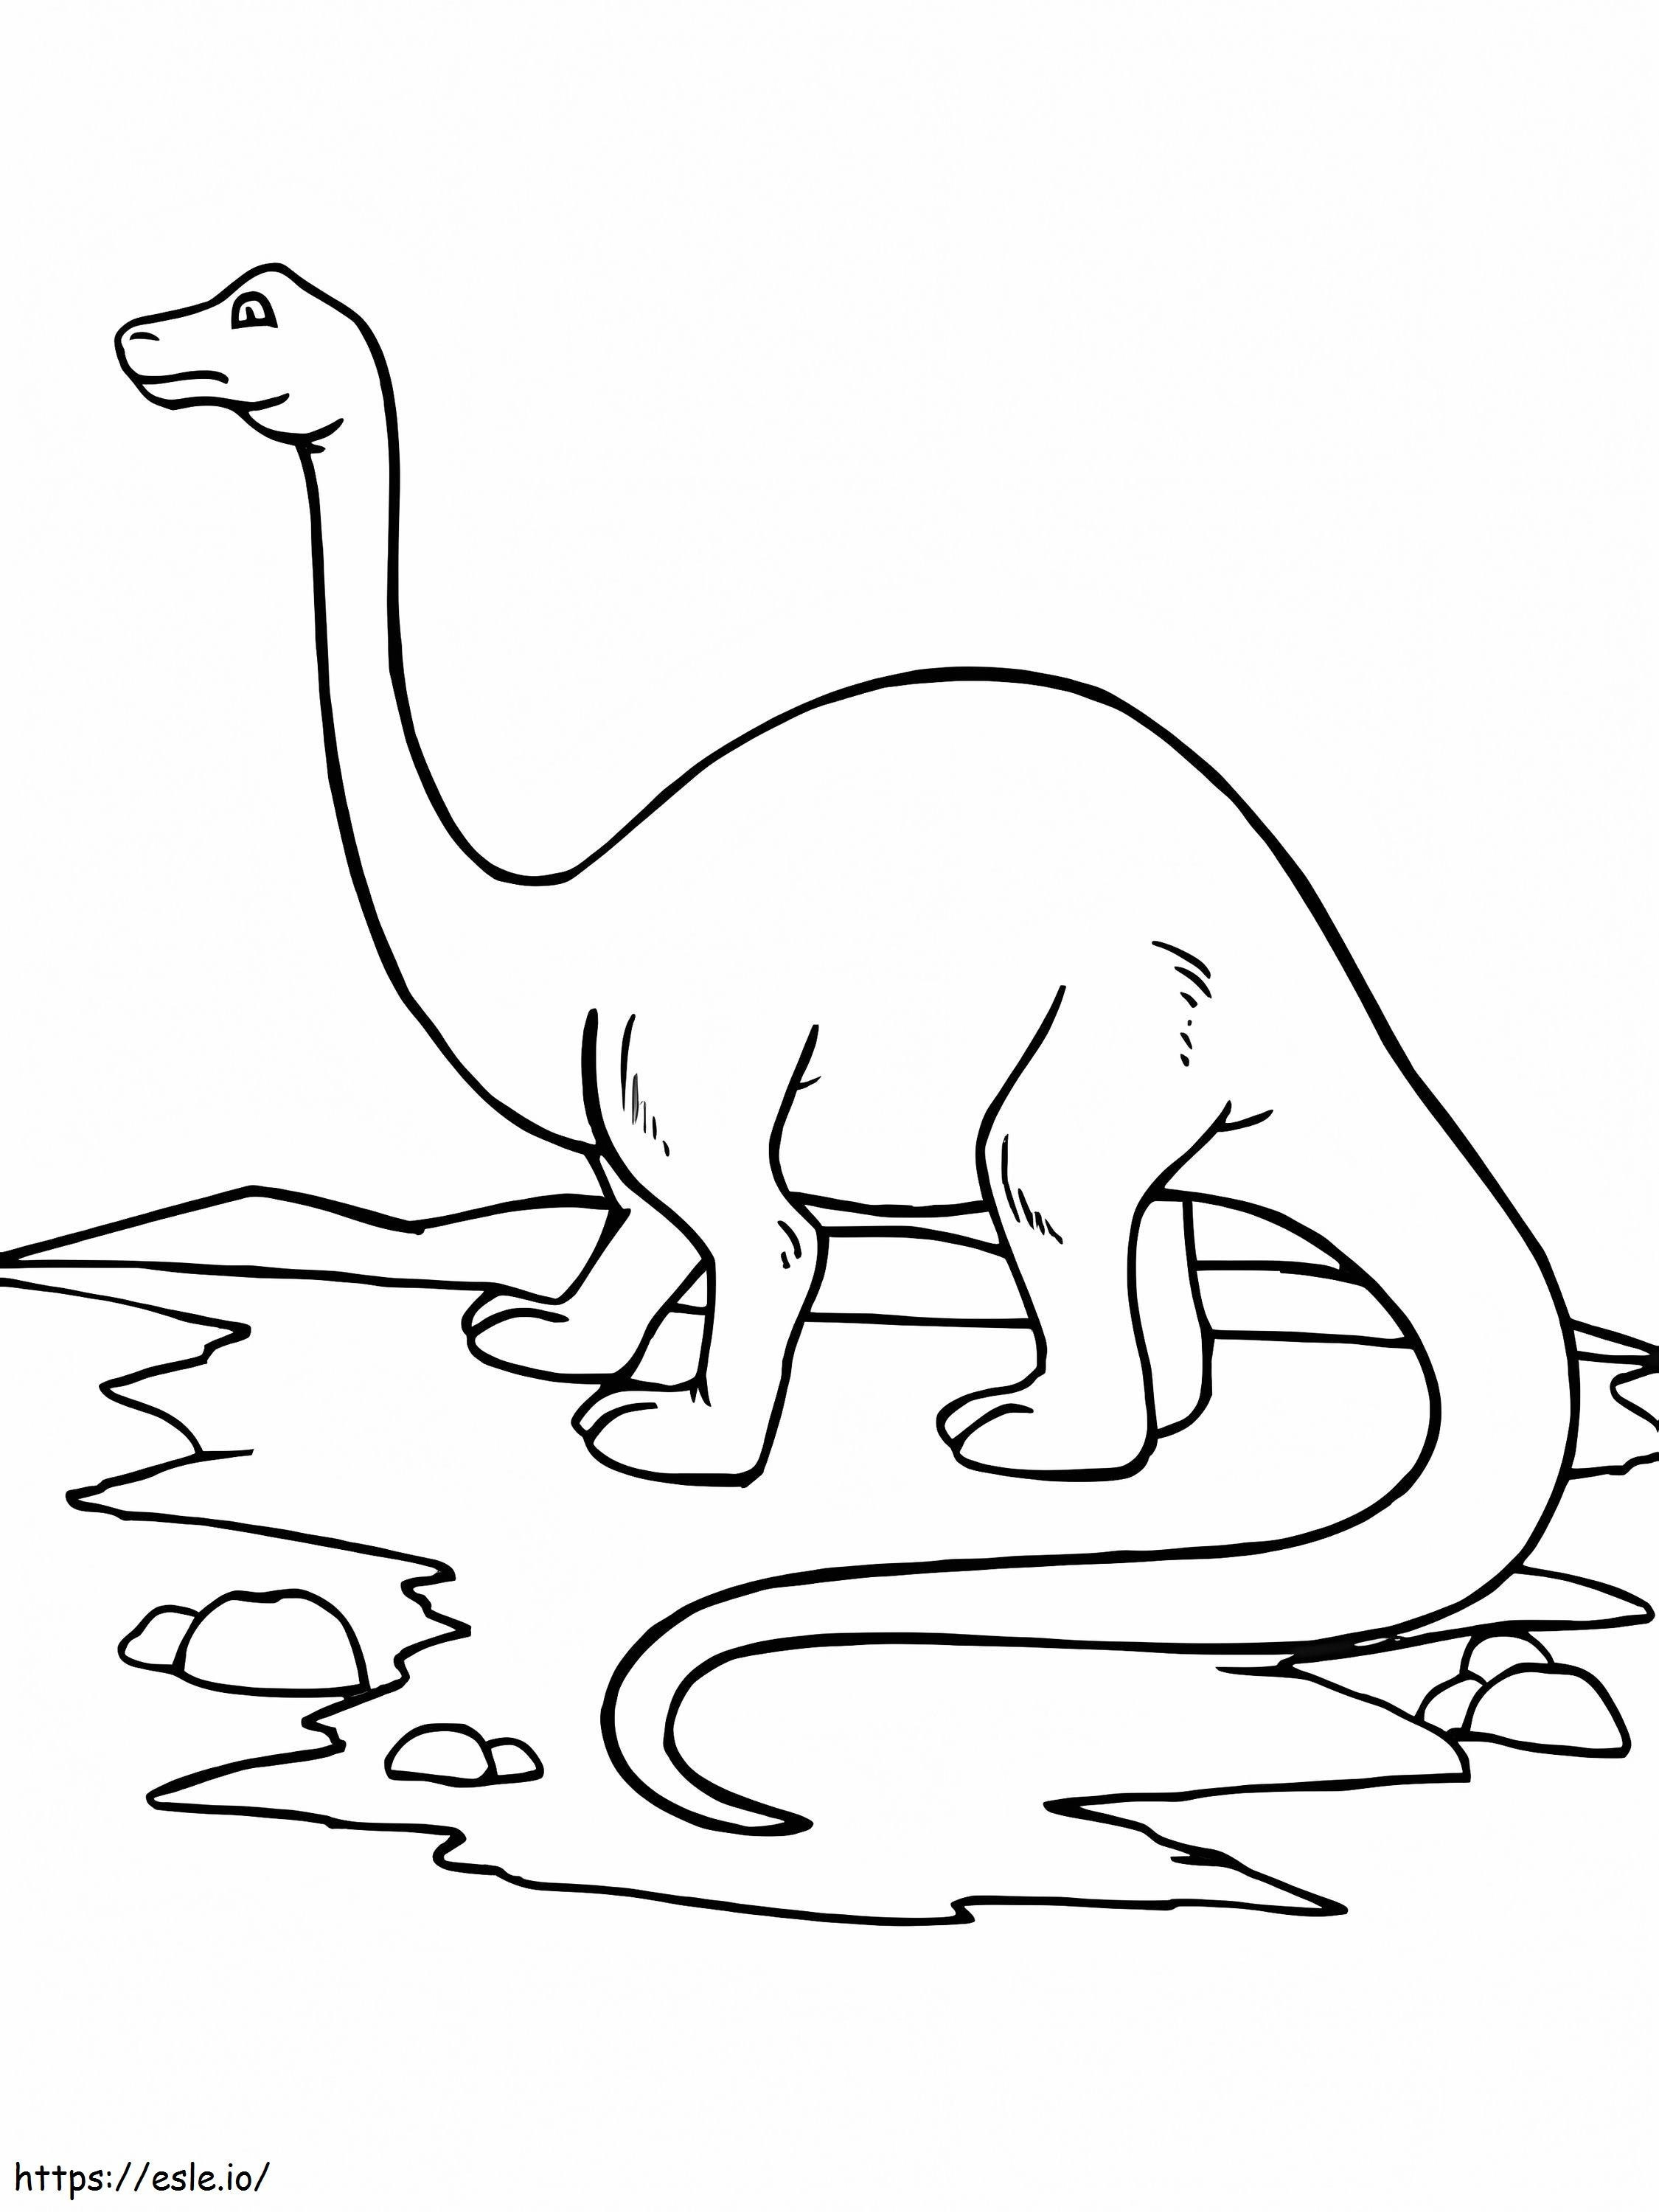 Brontosaurus im Wasser ausmalbilder